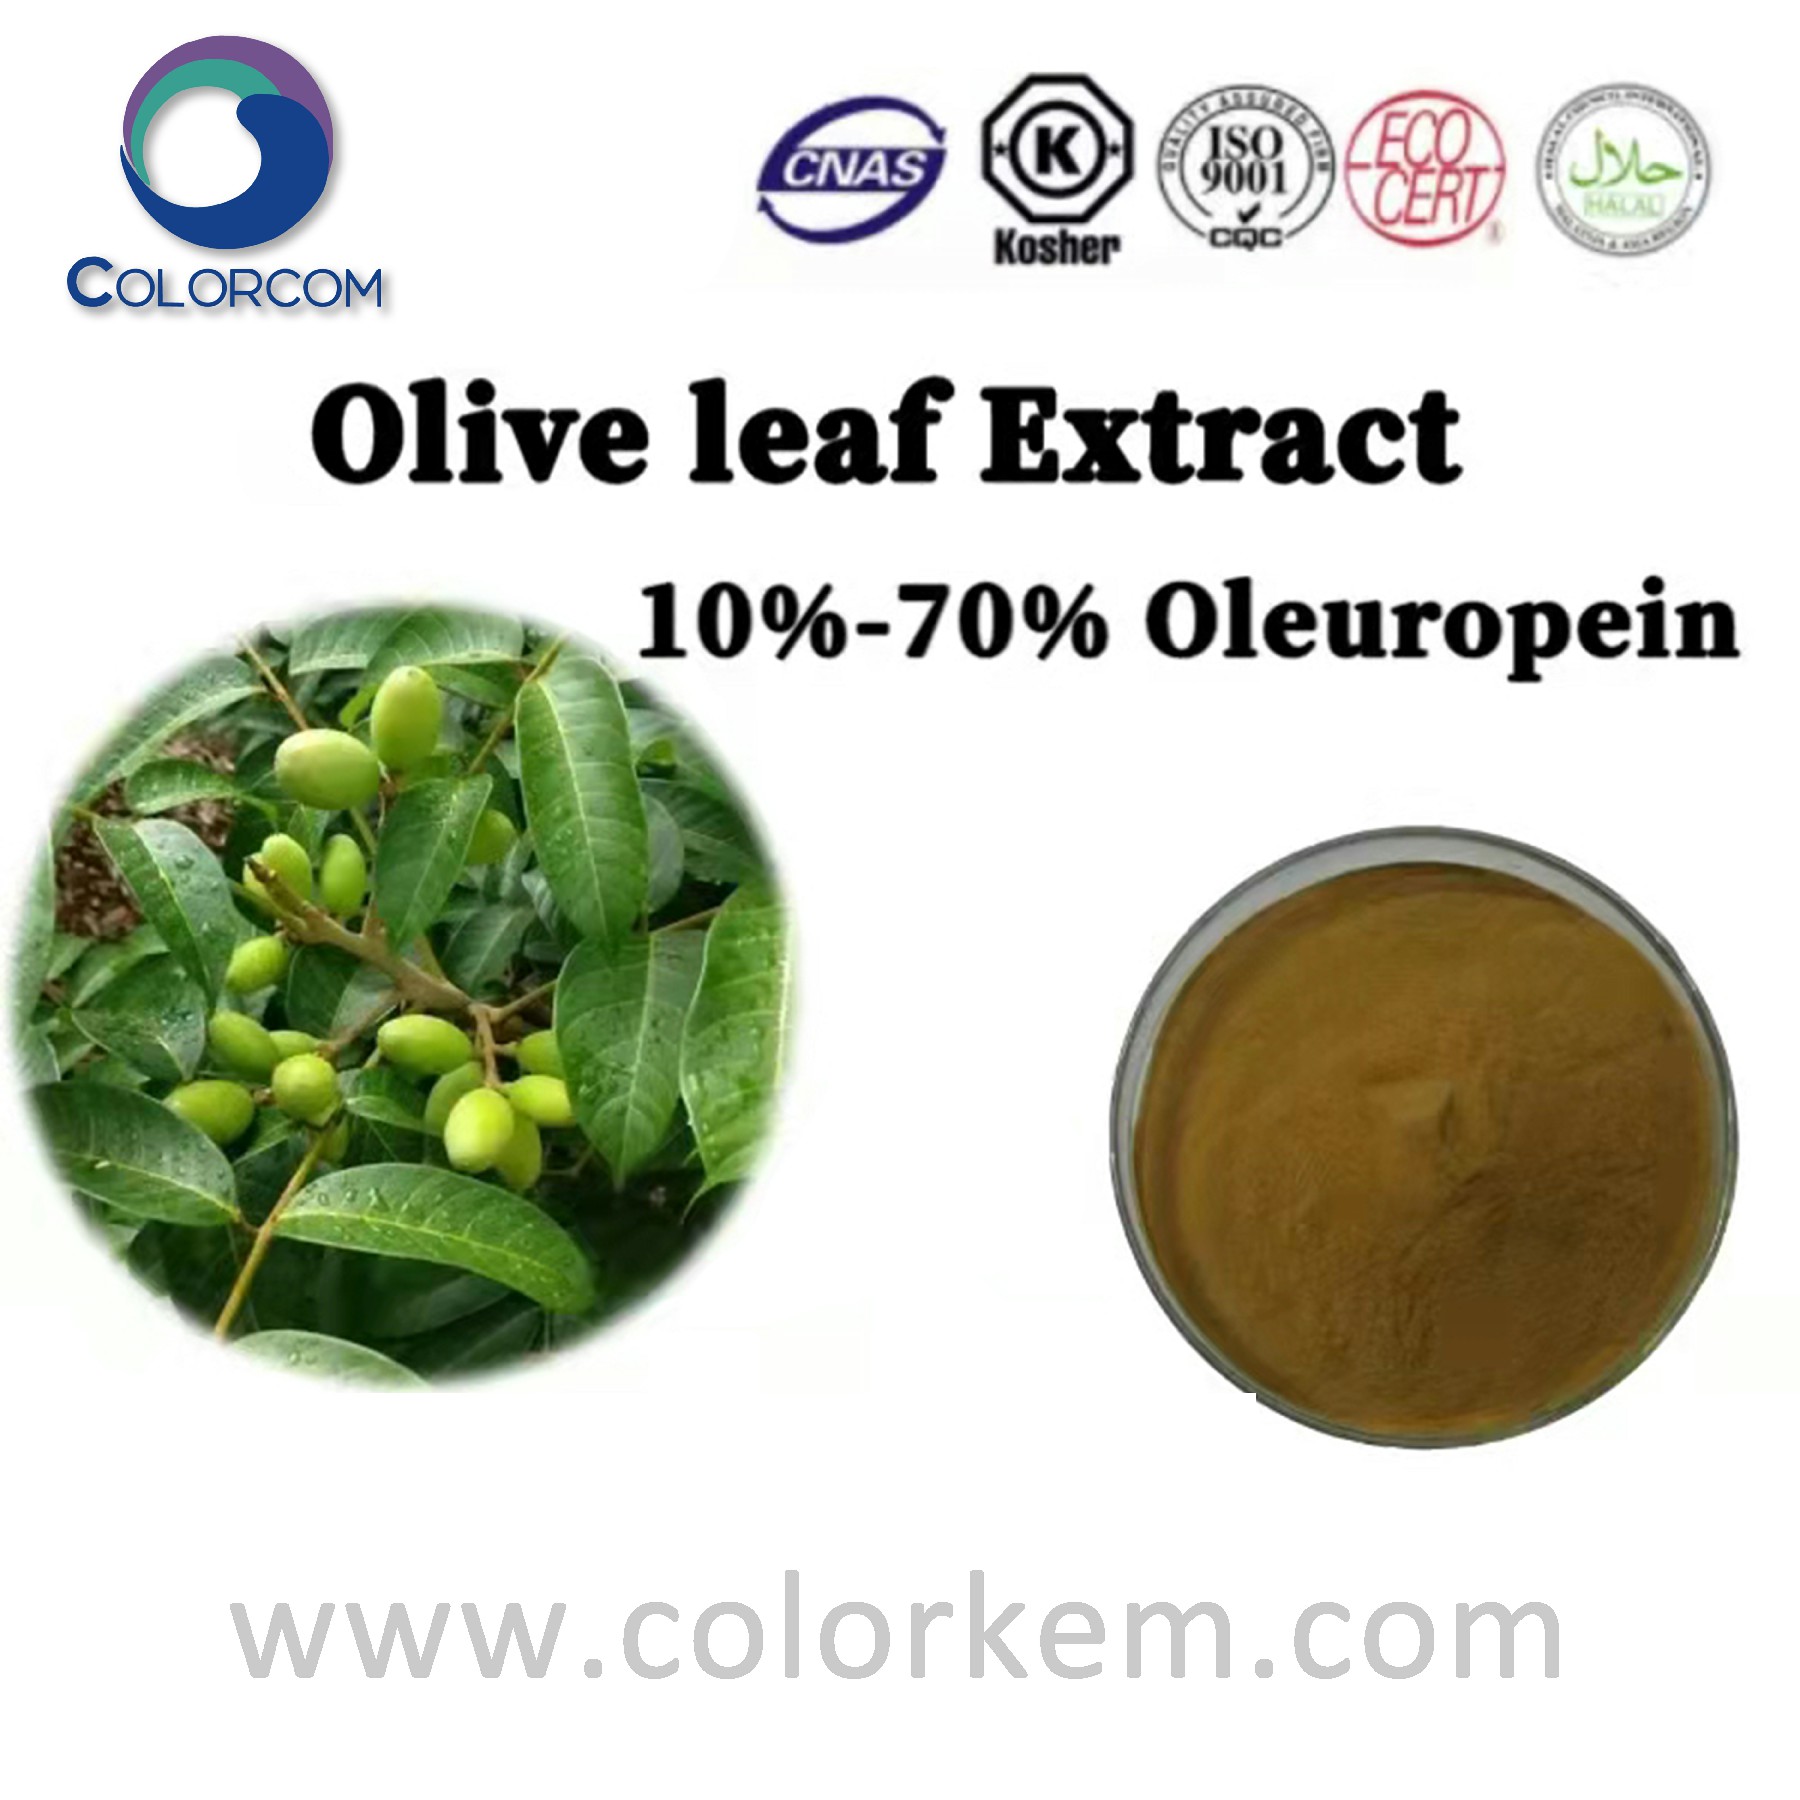 Olive leaf extract Oleuropein